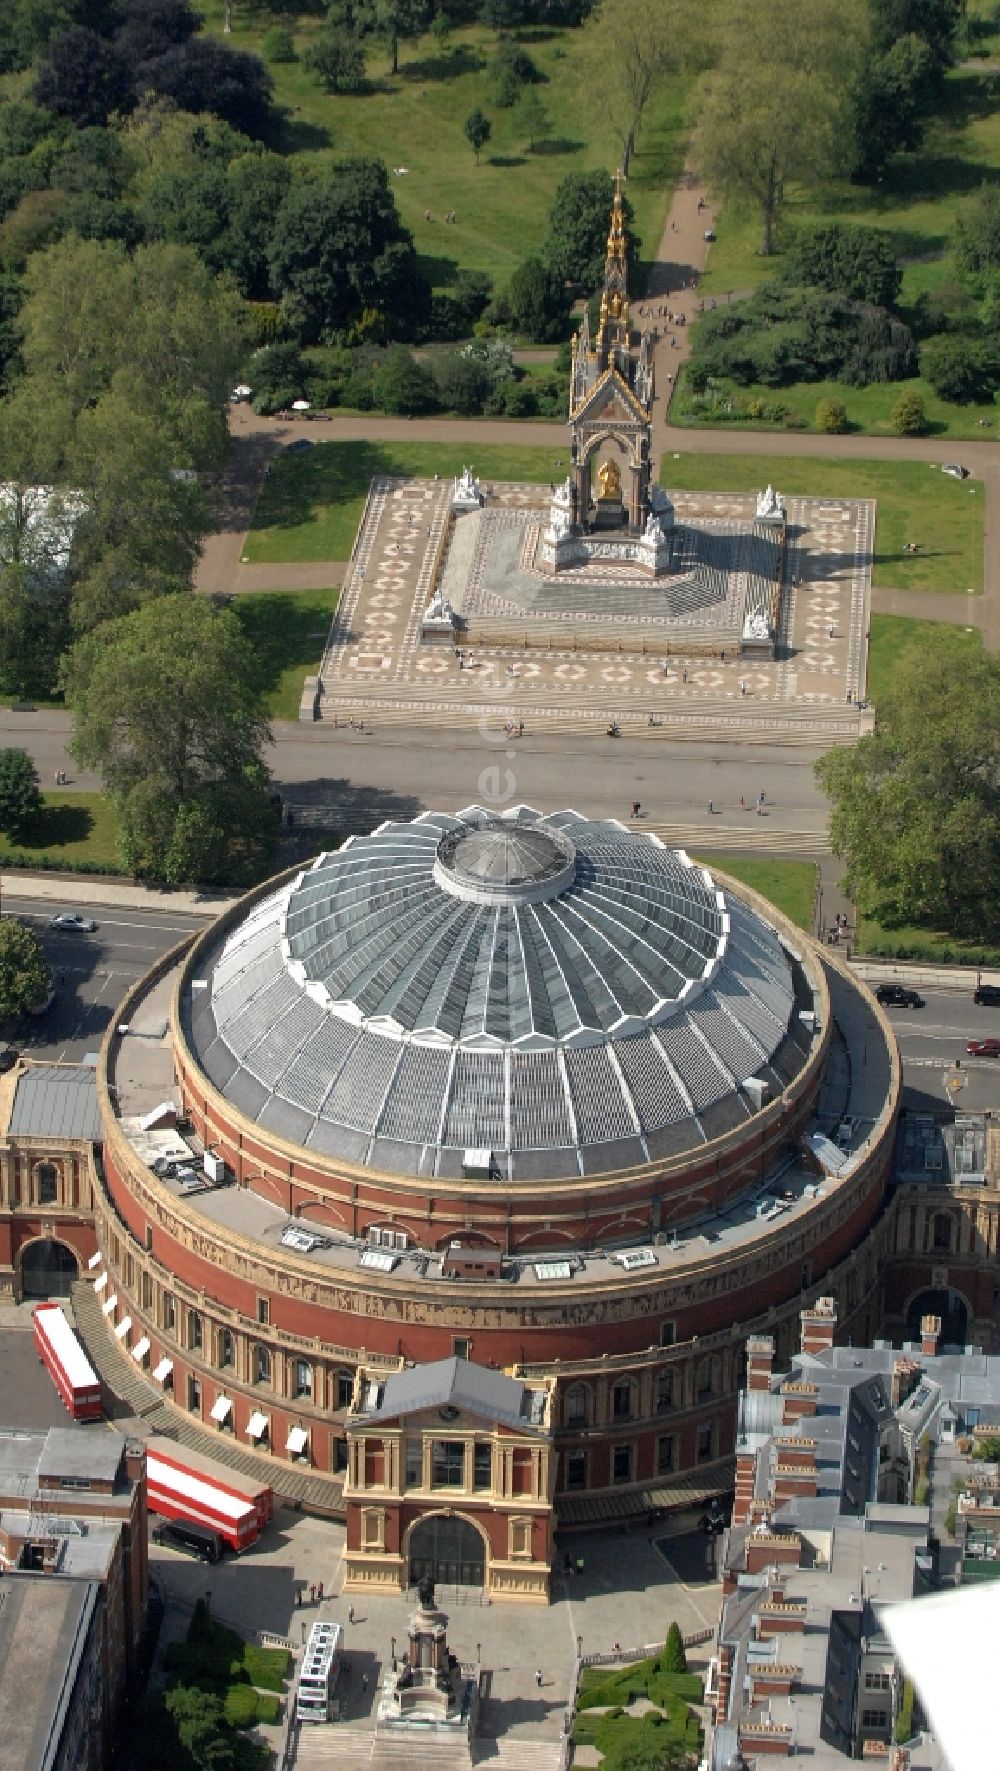 London von oben - Konzerthaus / Veranstaltungshalle Royal Albert Hall of Arts and Sciences in London